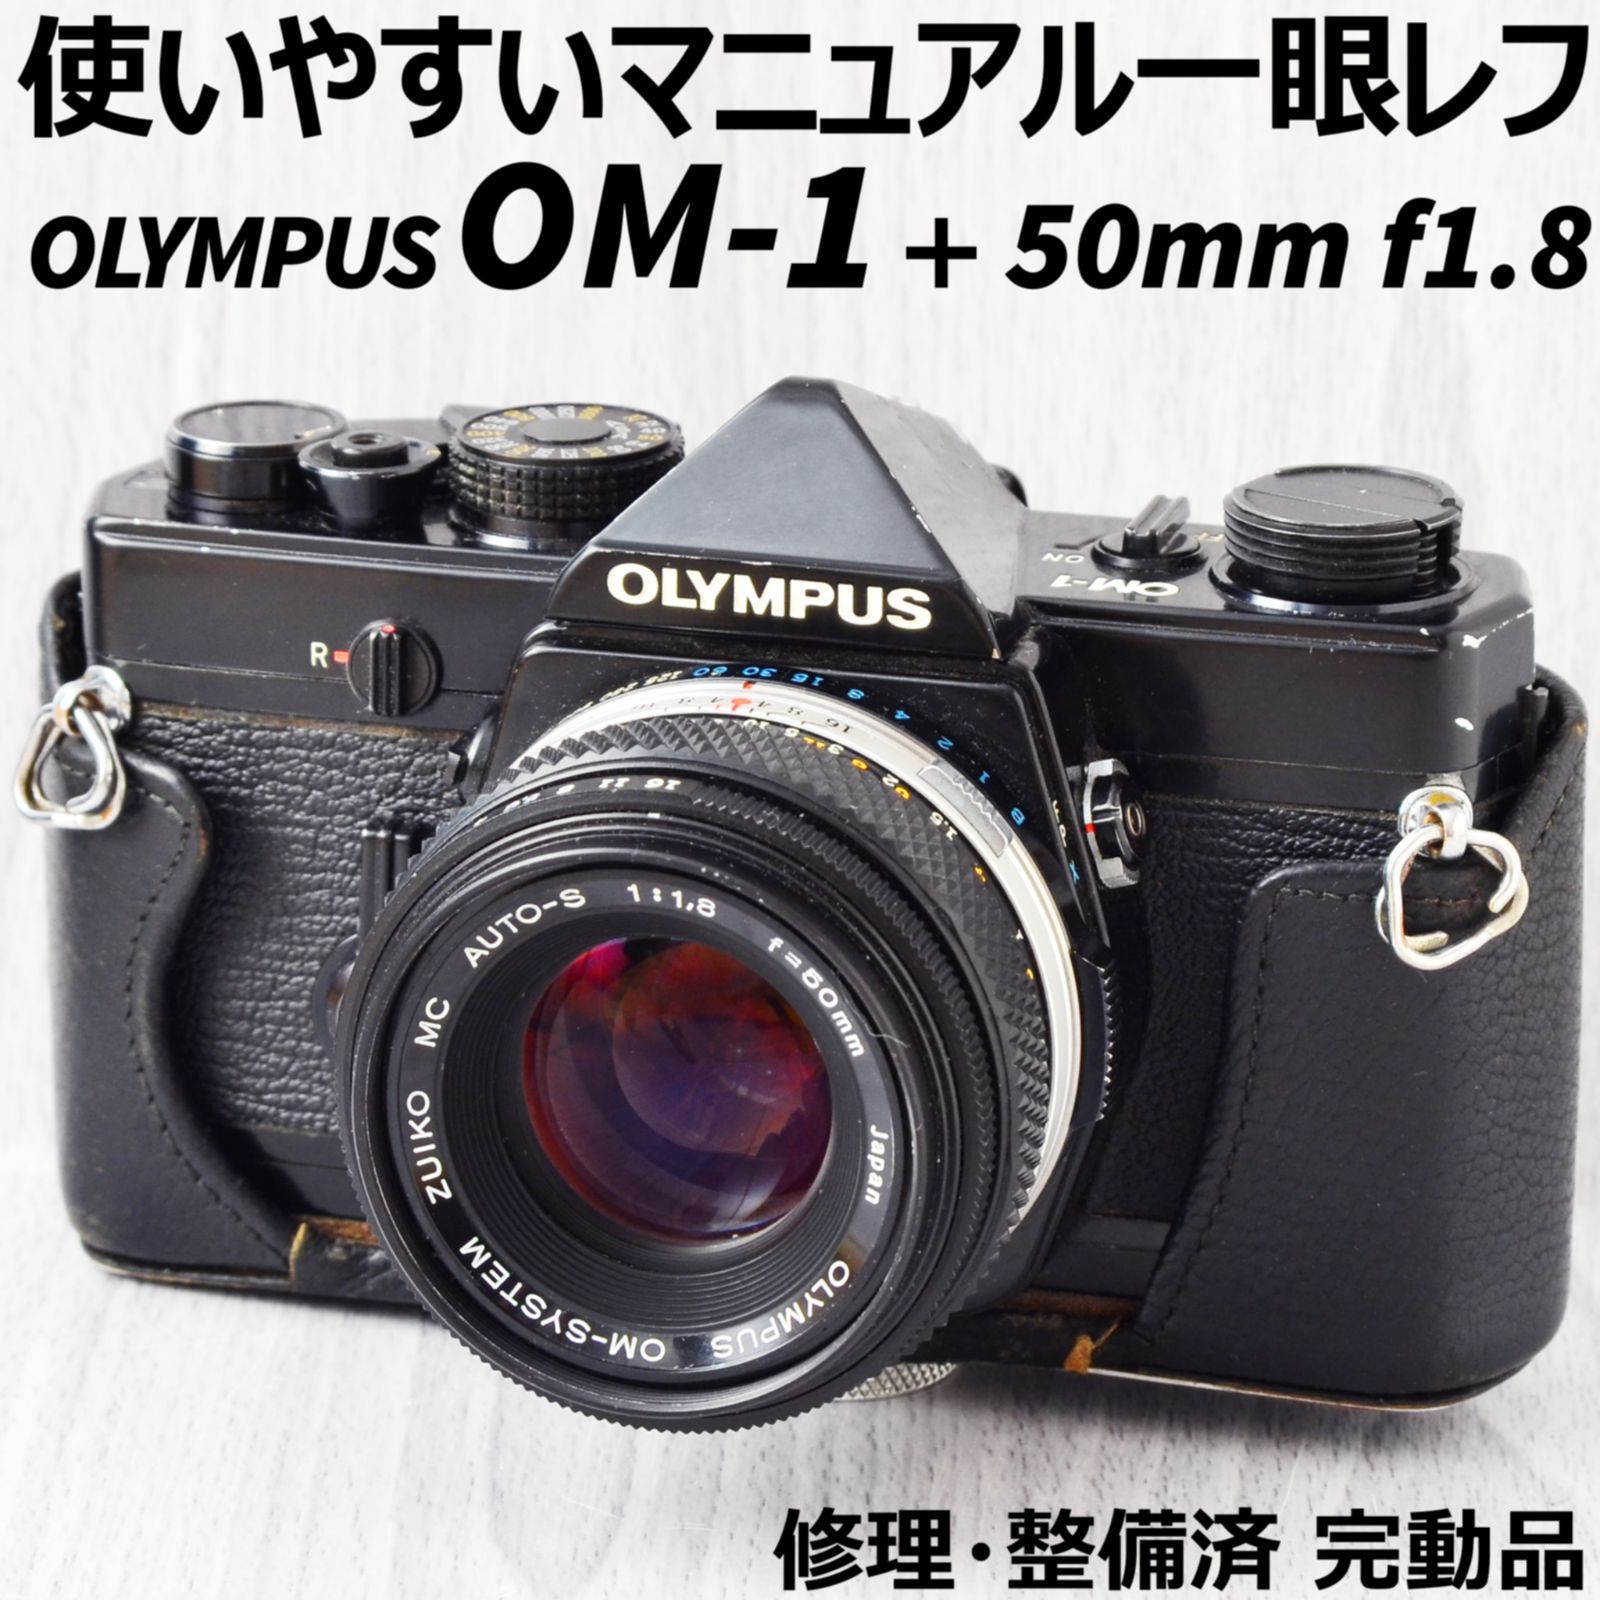 分解整備・モルト交換済 OLYMPUS OM-1 50mm F1.4 #5713 - フィルムカメラ